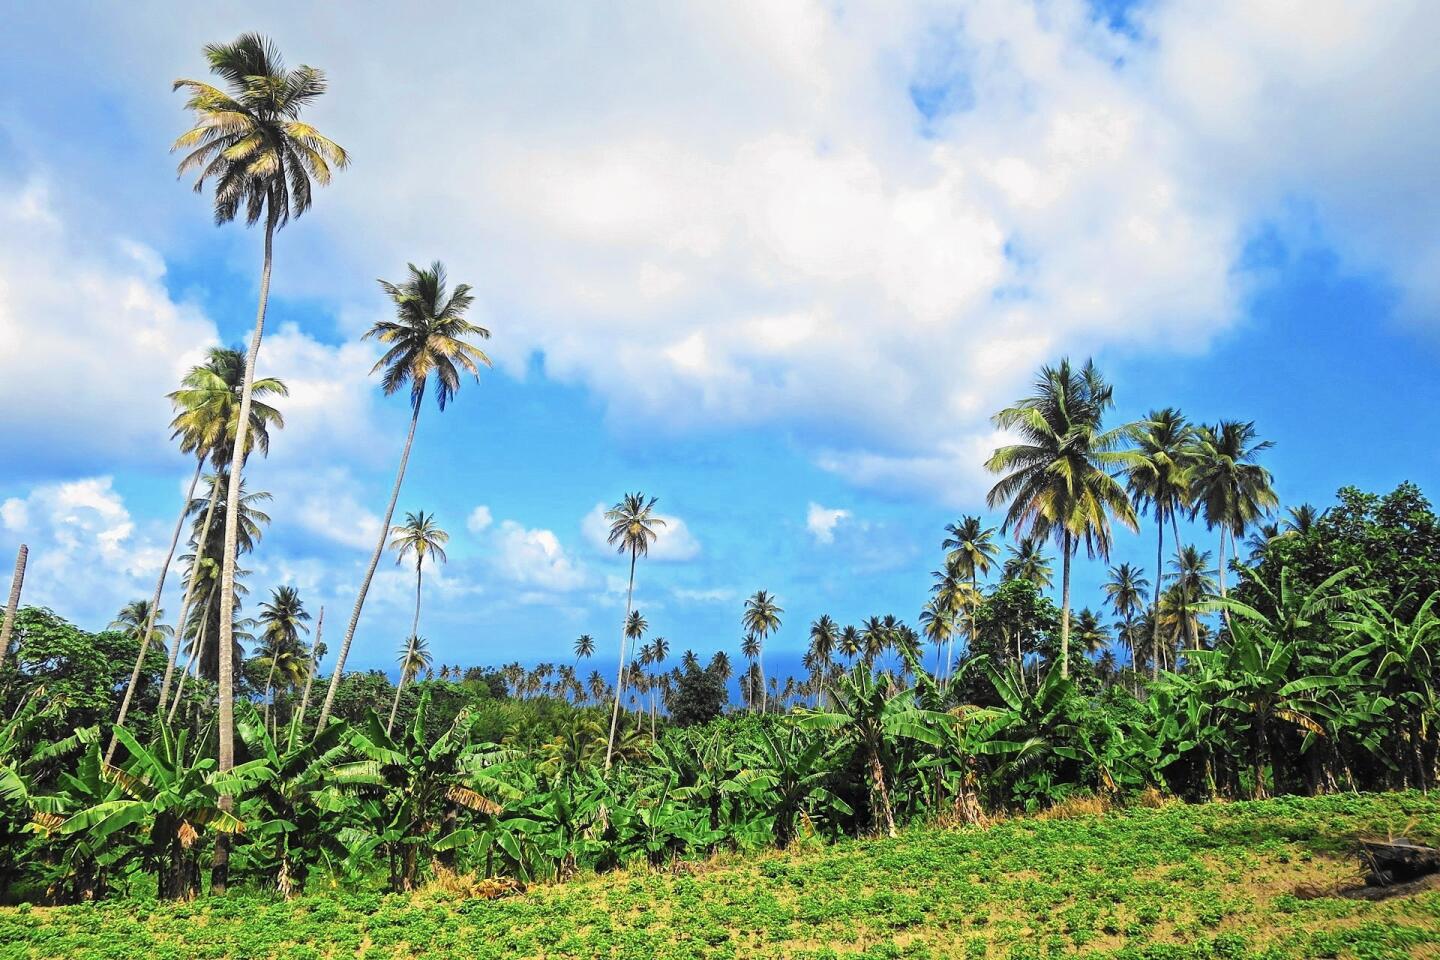 ct-cth-travel-saint-vincent-5-coconut-plantation--20160411